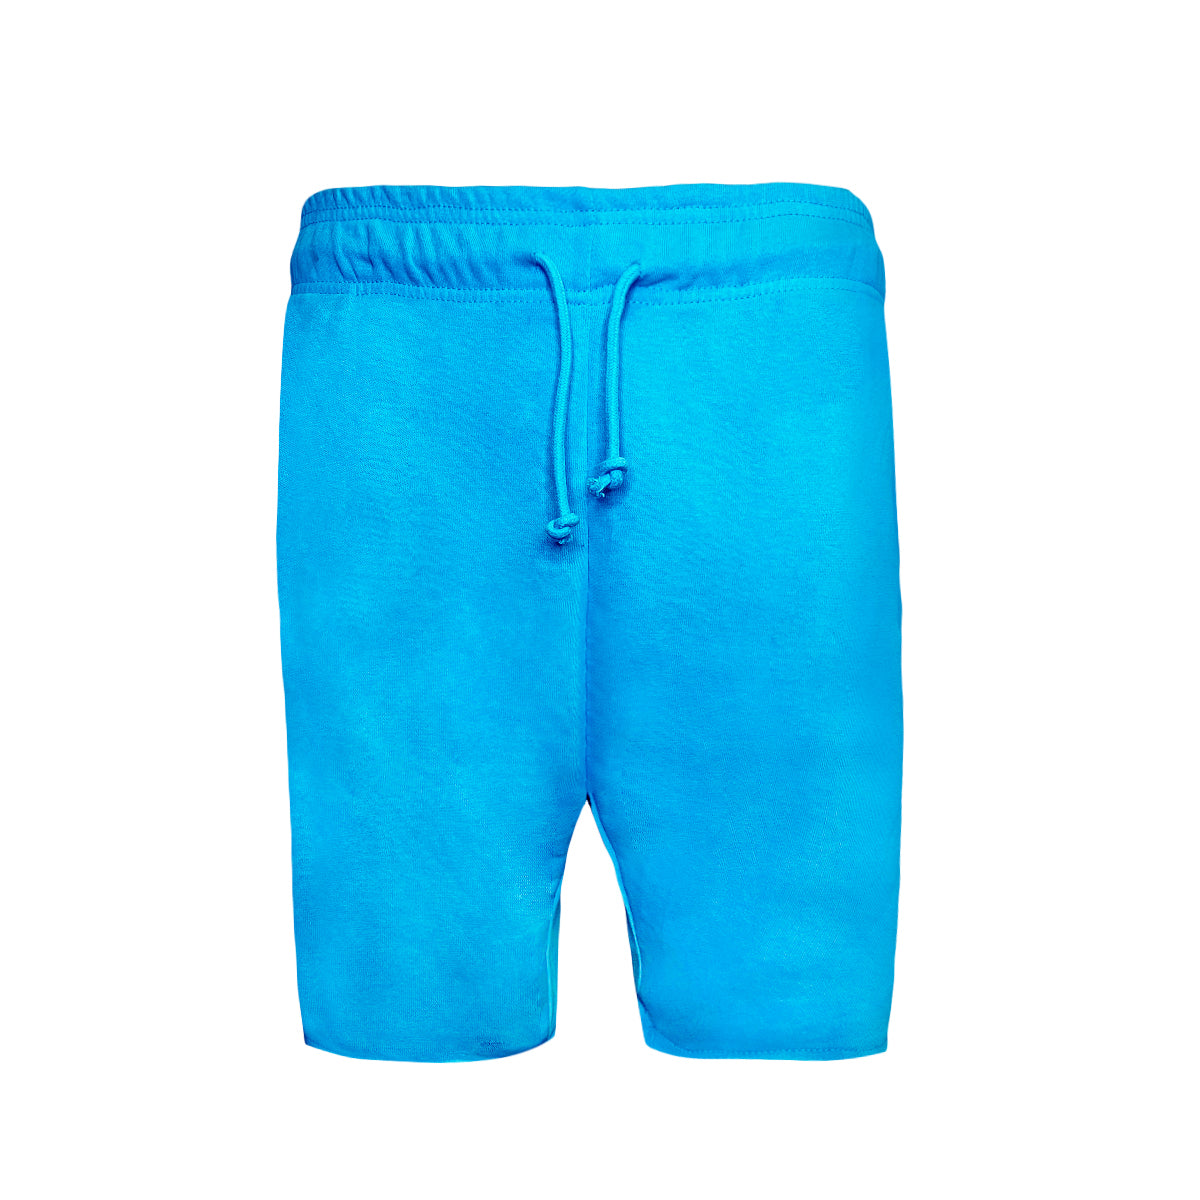 6030 - Adult Smart Shorts-Powder Blue Color - AF APPARELS(USA)